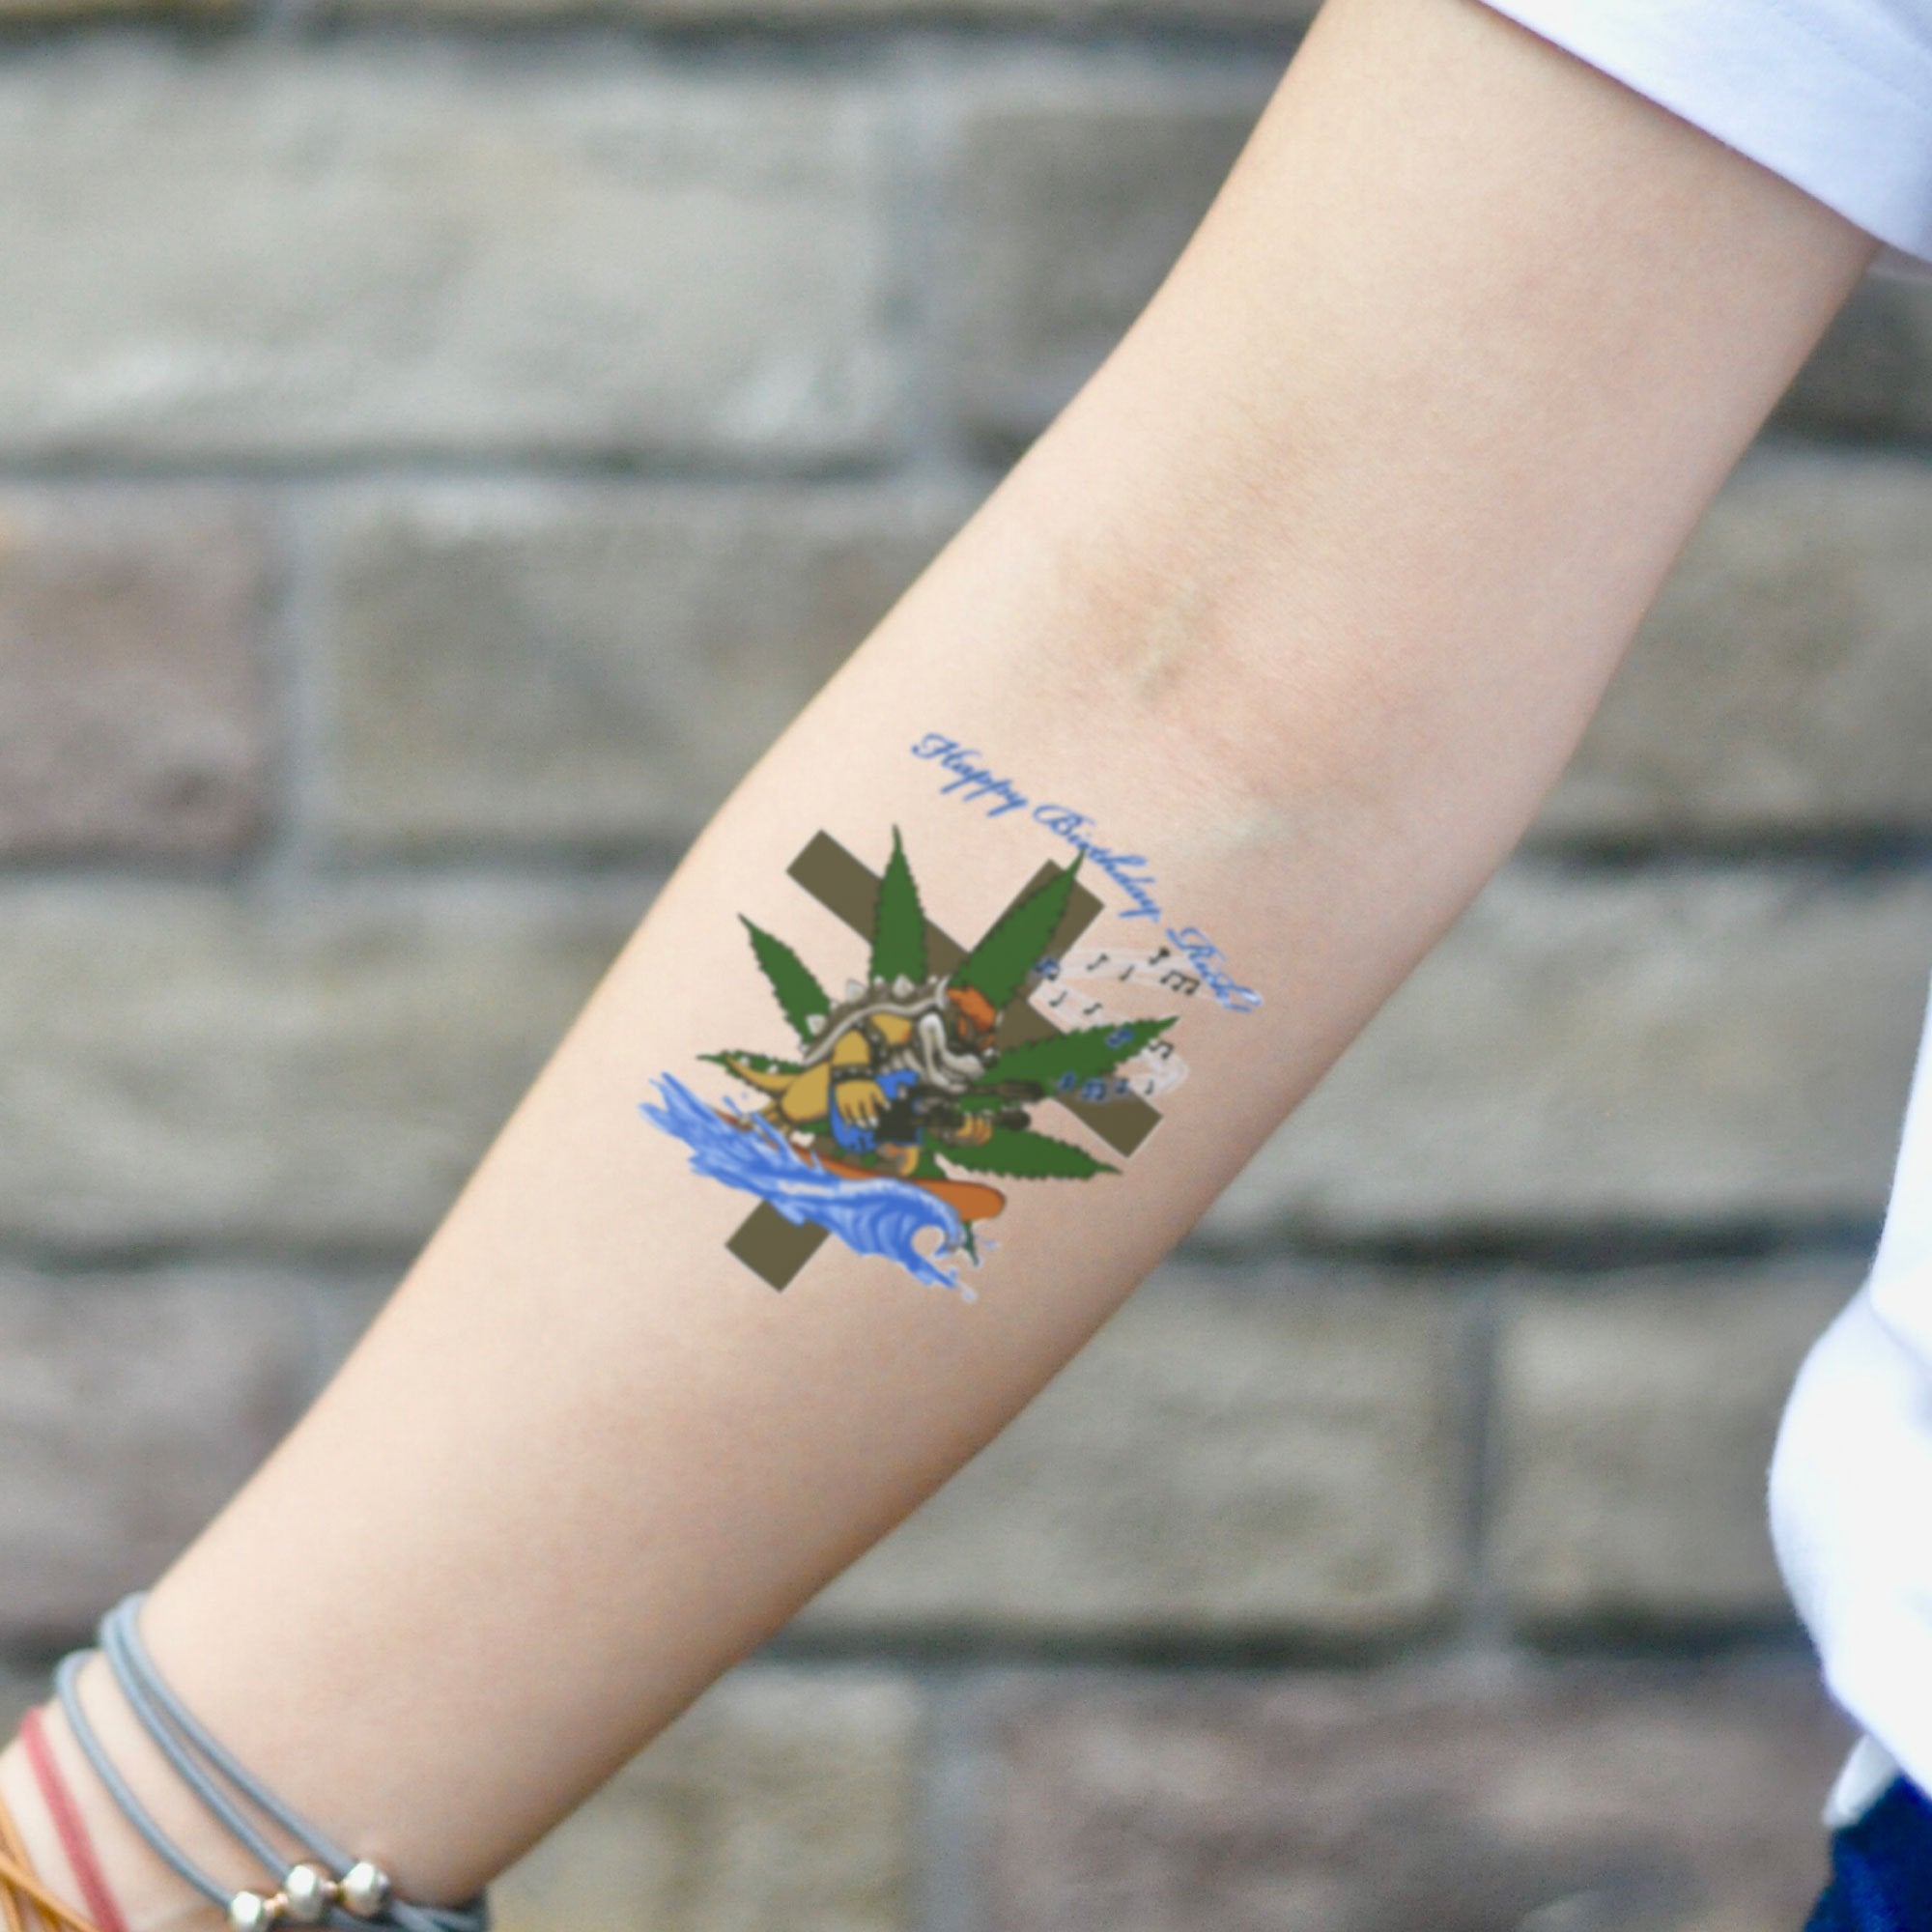 1 Sheets 15pcs Airbrush Glitter Tattoo Stencils Girl Kids Drawing Template  Small Flower Crown Cartoon Tattoo Stencil 6*4.8cm - AliExpress